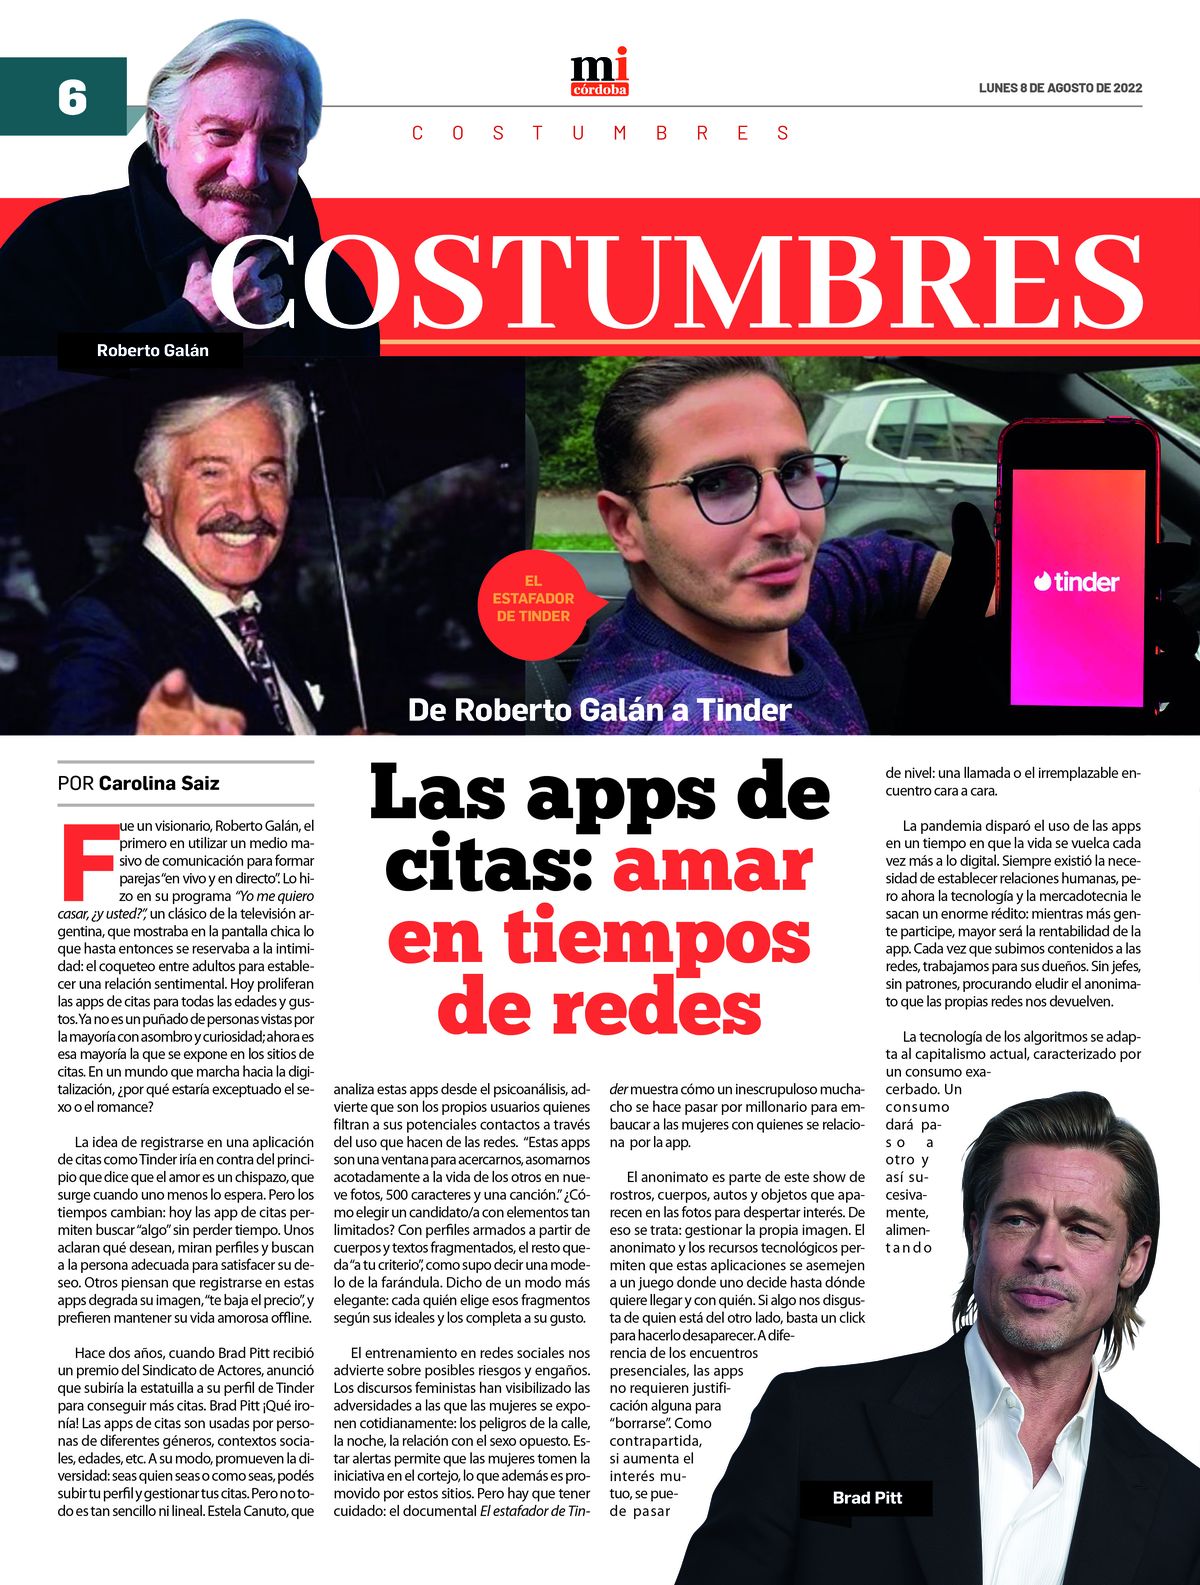 Ya circula la 21ra edición del semanario Marca Informativa Córdoba